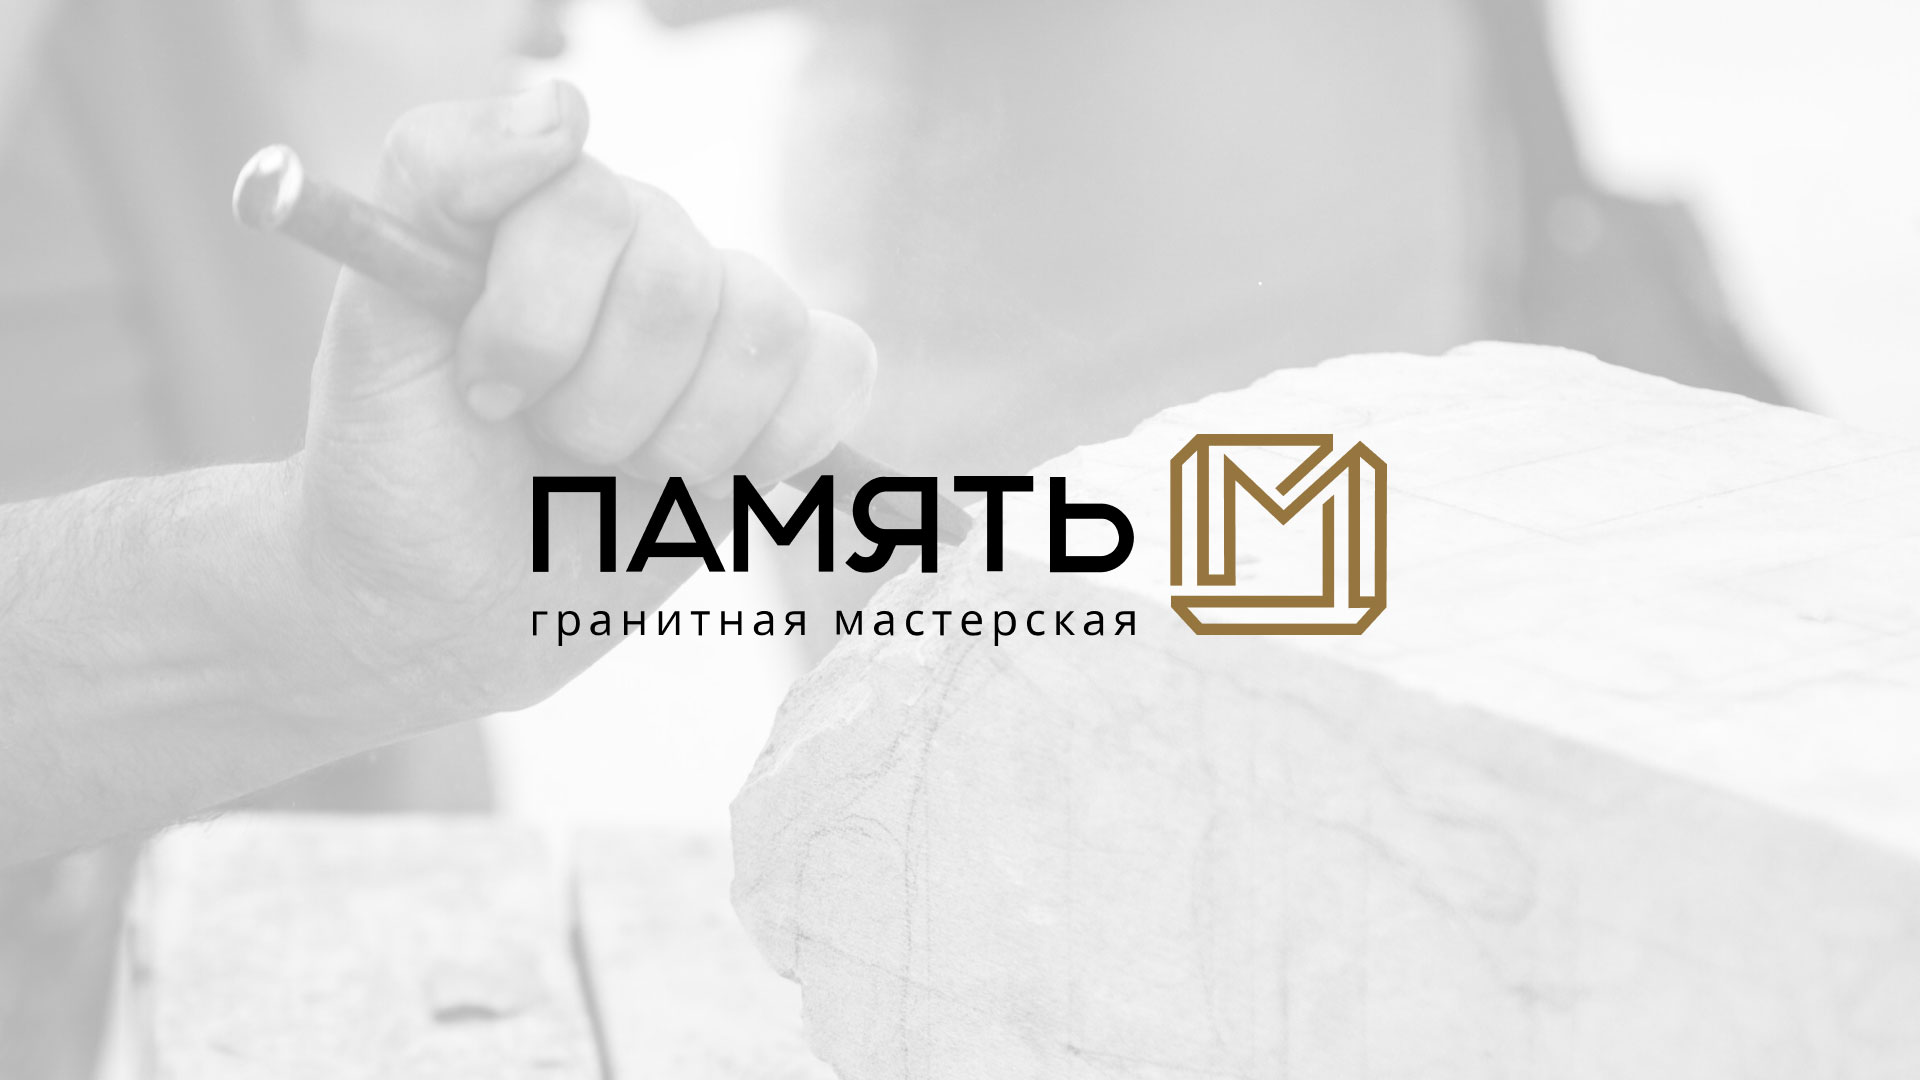 Разработка логотипа и сайта компании «Память-М» в 